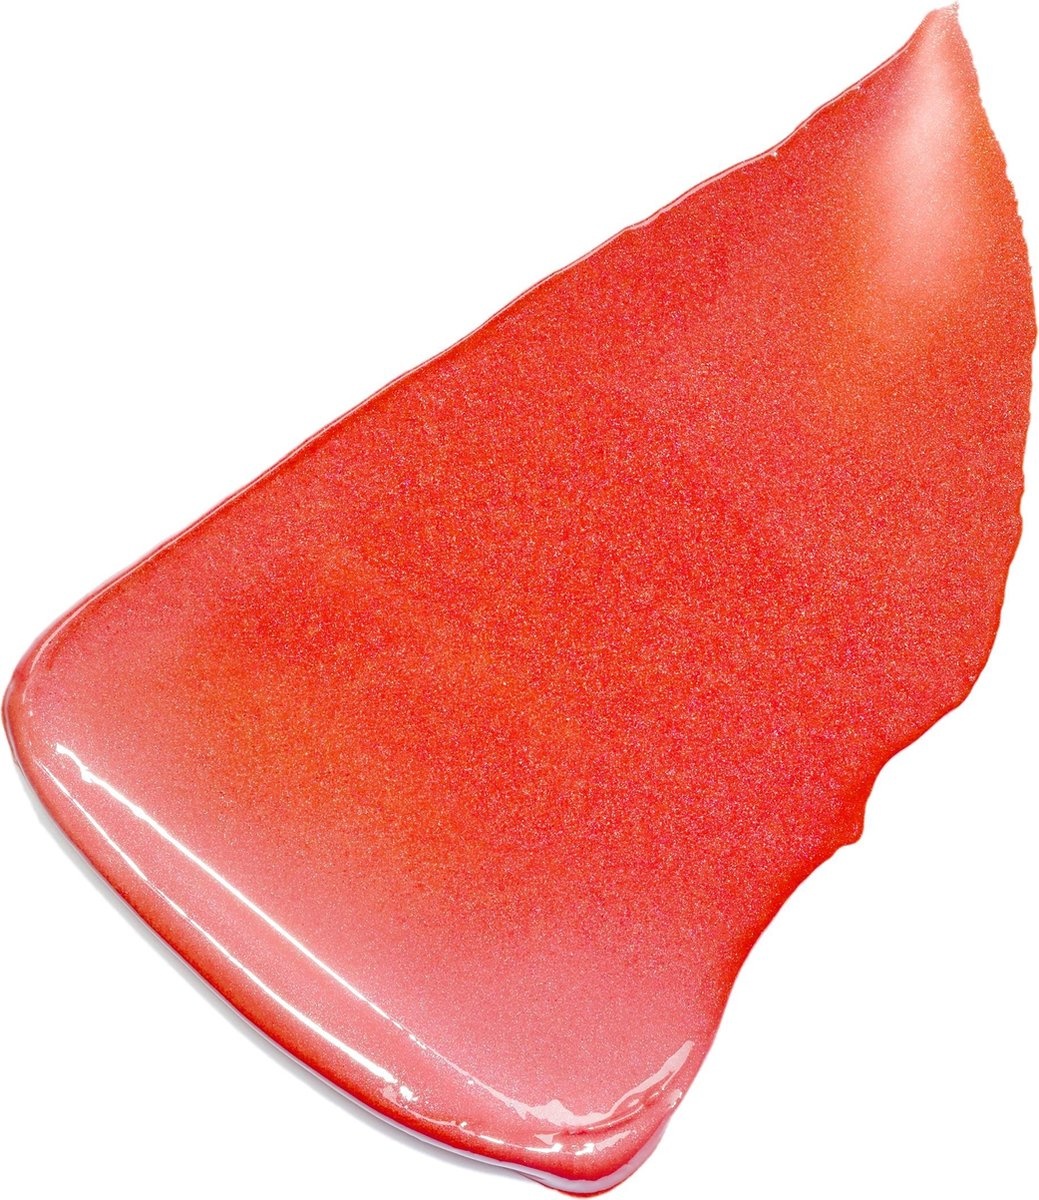 L'Oréal Paris Color Riche Lipstick - 373 Magnetic Coral